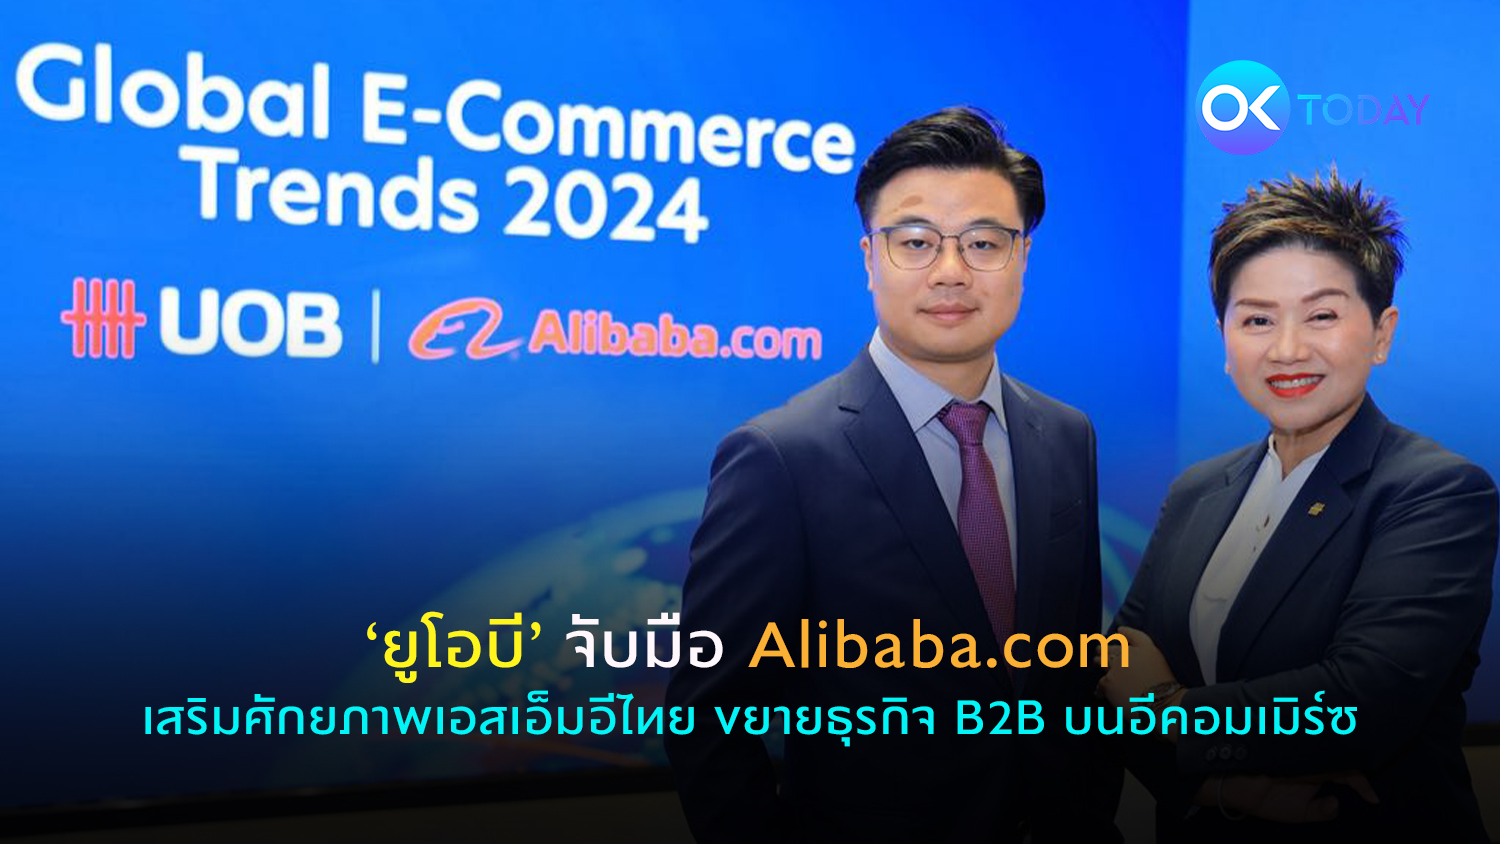 ‘ยูโอบี’ จับมือ Alibaba.com เสริมศักยภาพเอสเอ็มอีไทย ขยายธุรกิจ B2B บนอีคอมเมิร์ซ